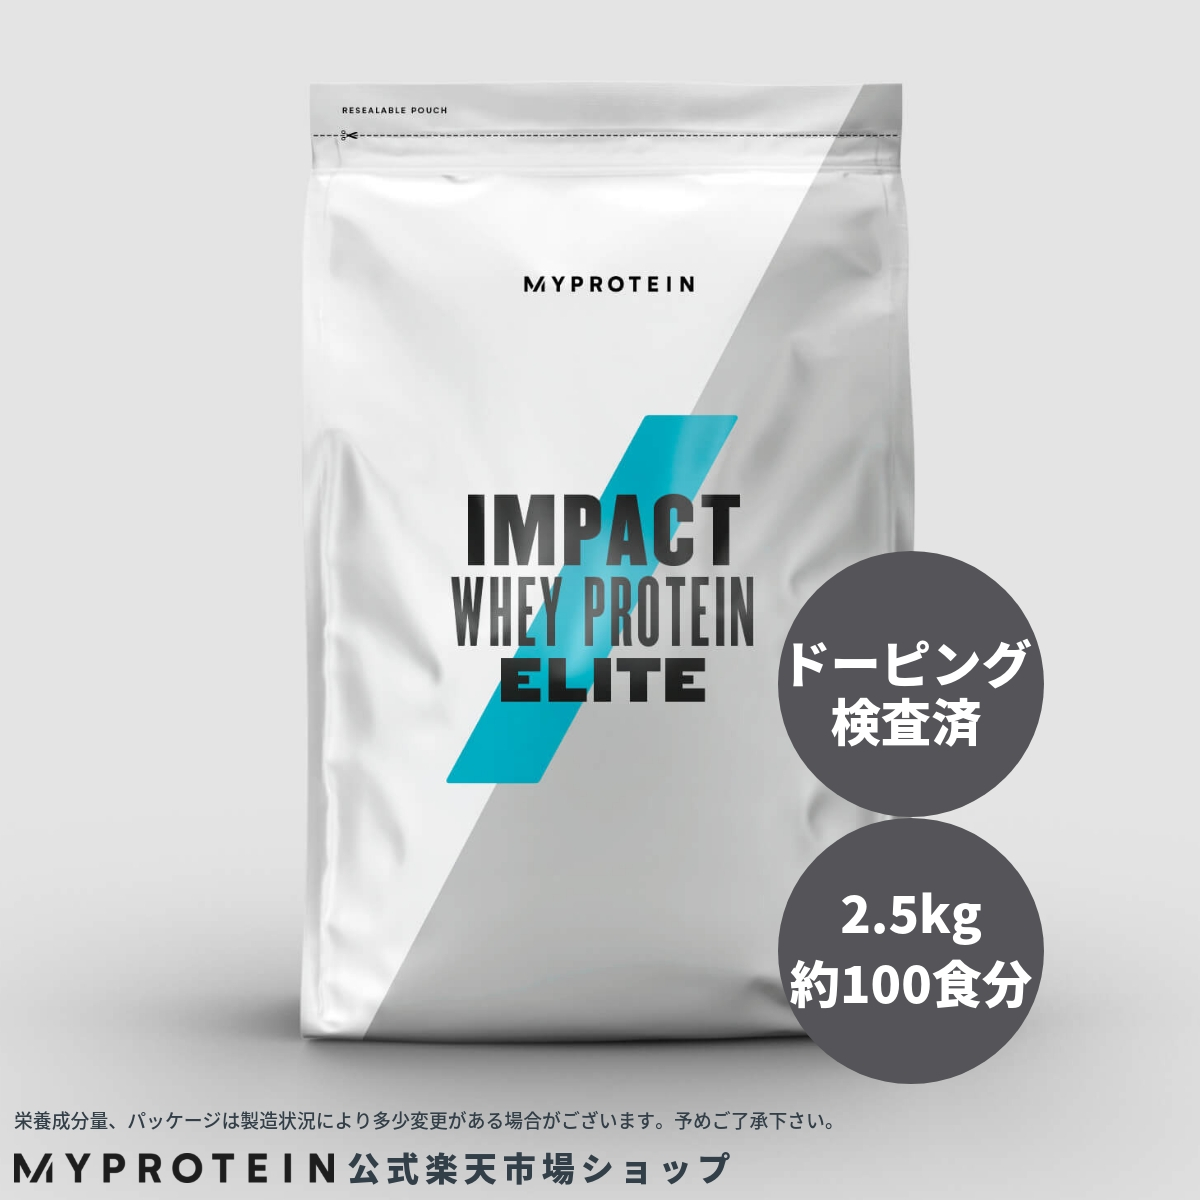 楽天市場 マイプロテイン 公式 Myprotein Impact ホエイプロテイン エリート 2 5kg 約100食分 楽天海外直送 マイプロテイン 楽天市場店